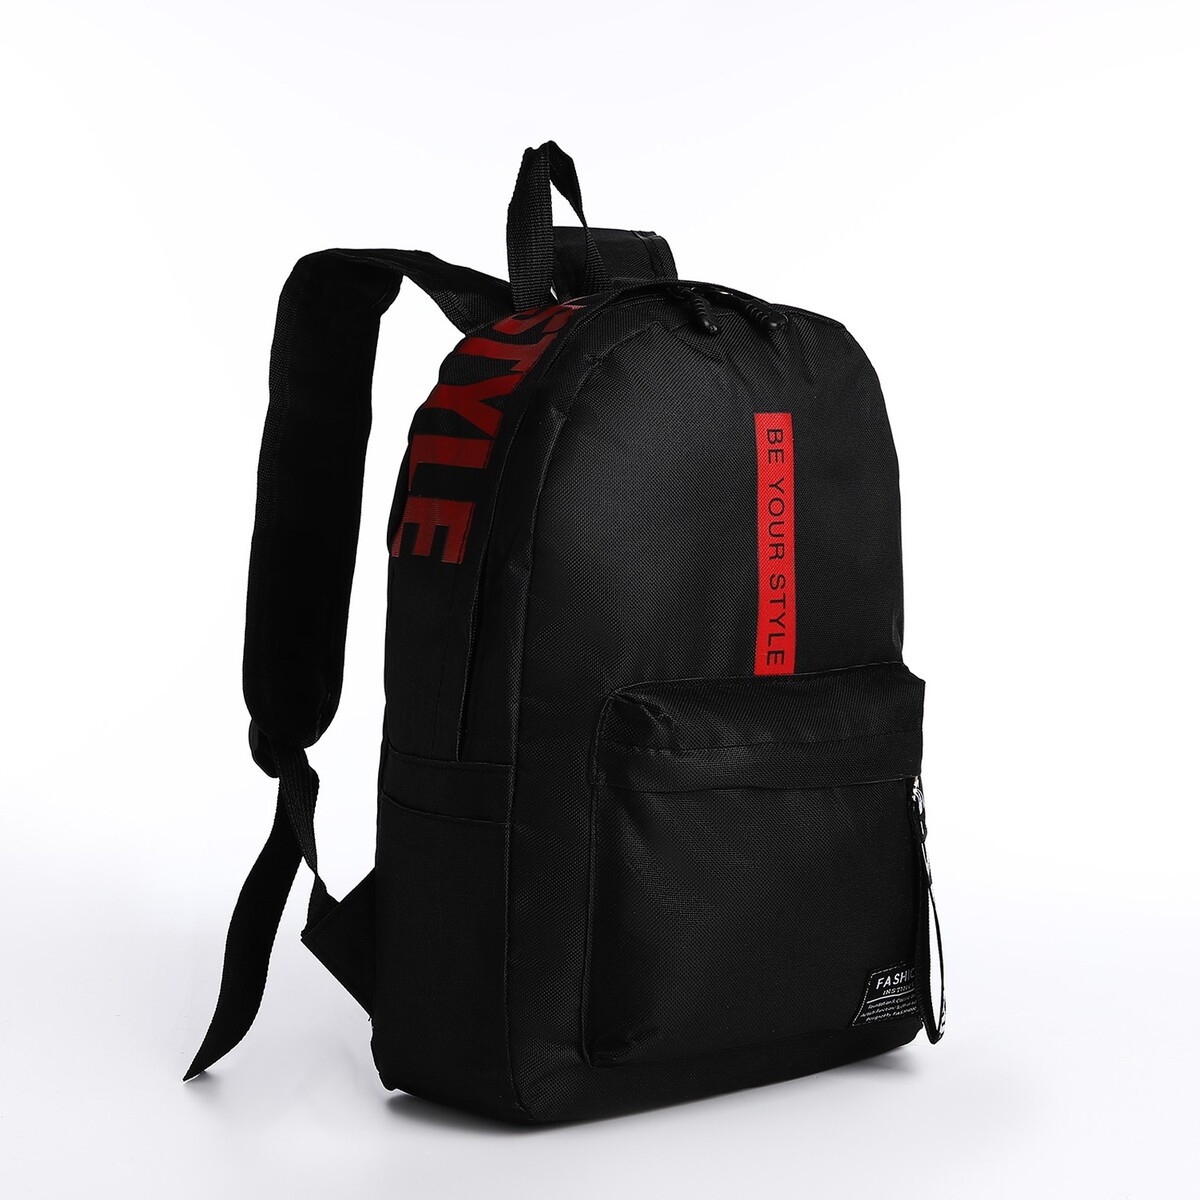 Рюкзак на молнии, наружный карман, 2 боковых кармана, цвет черный/красный рюкзак складной отдел на молнии наружный карман 2 боковых кармана